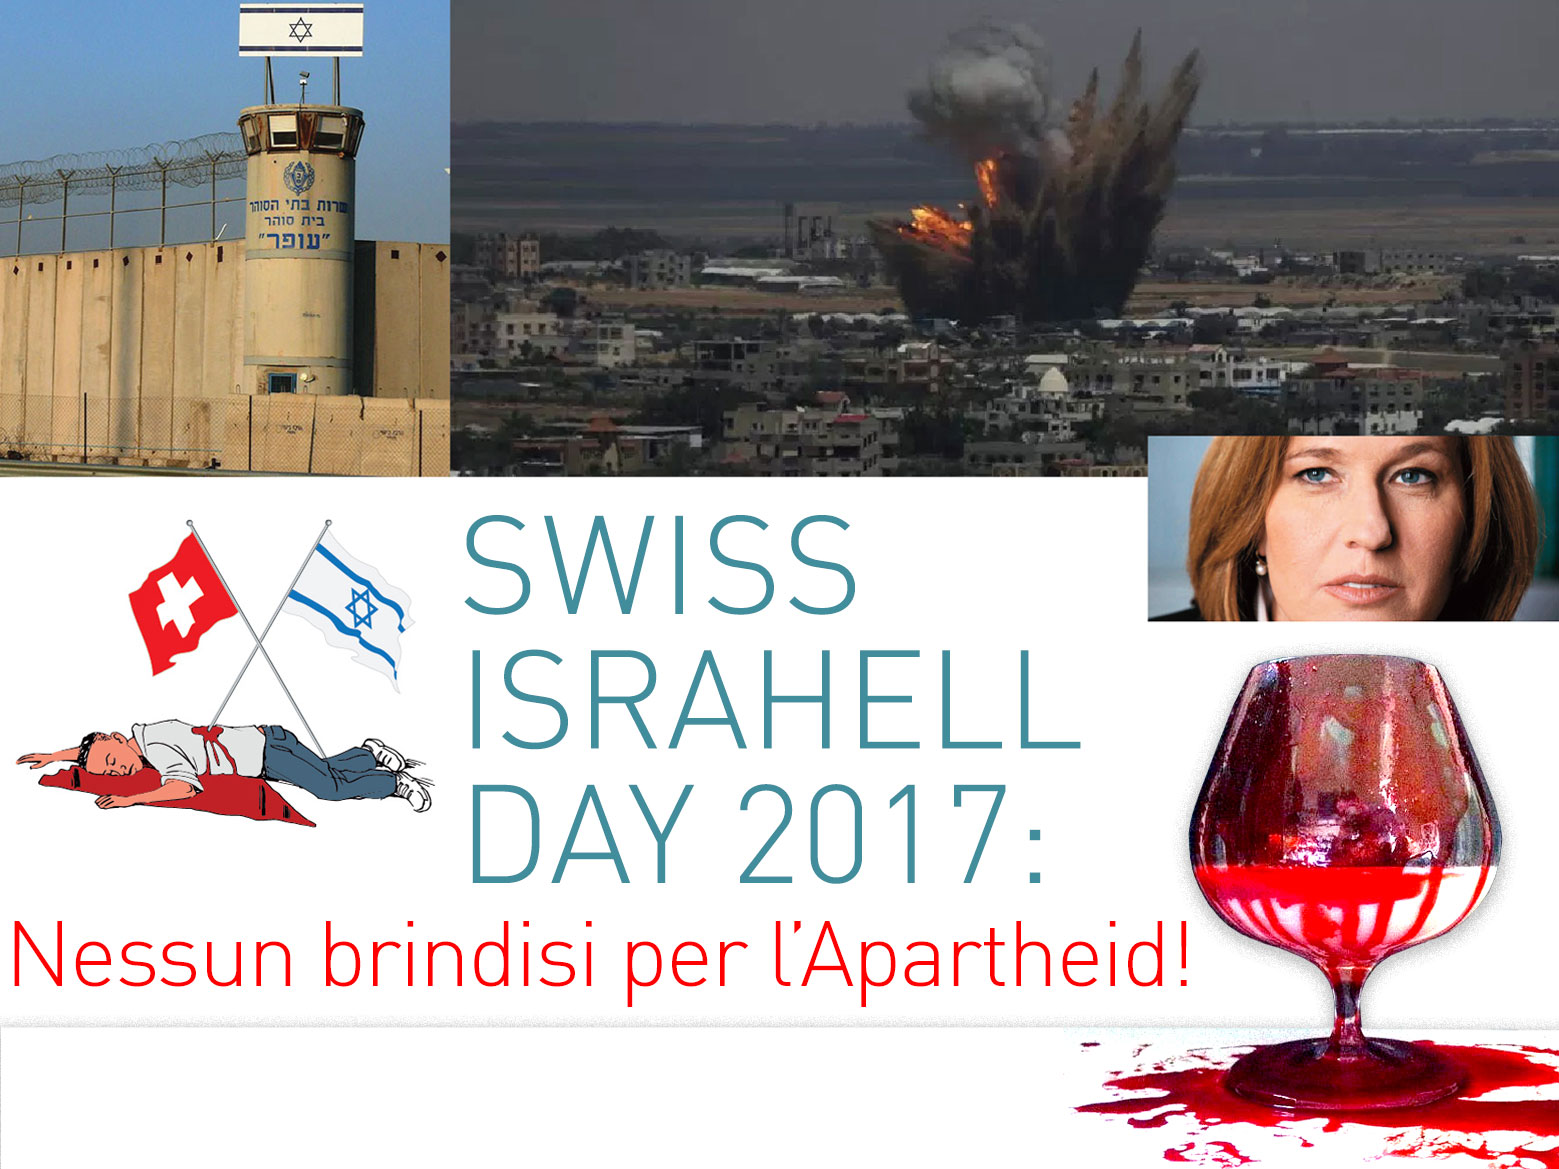 Swiss Israel Day 2017: nessun brindisi per l’Apartheid!